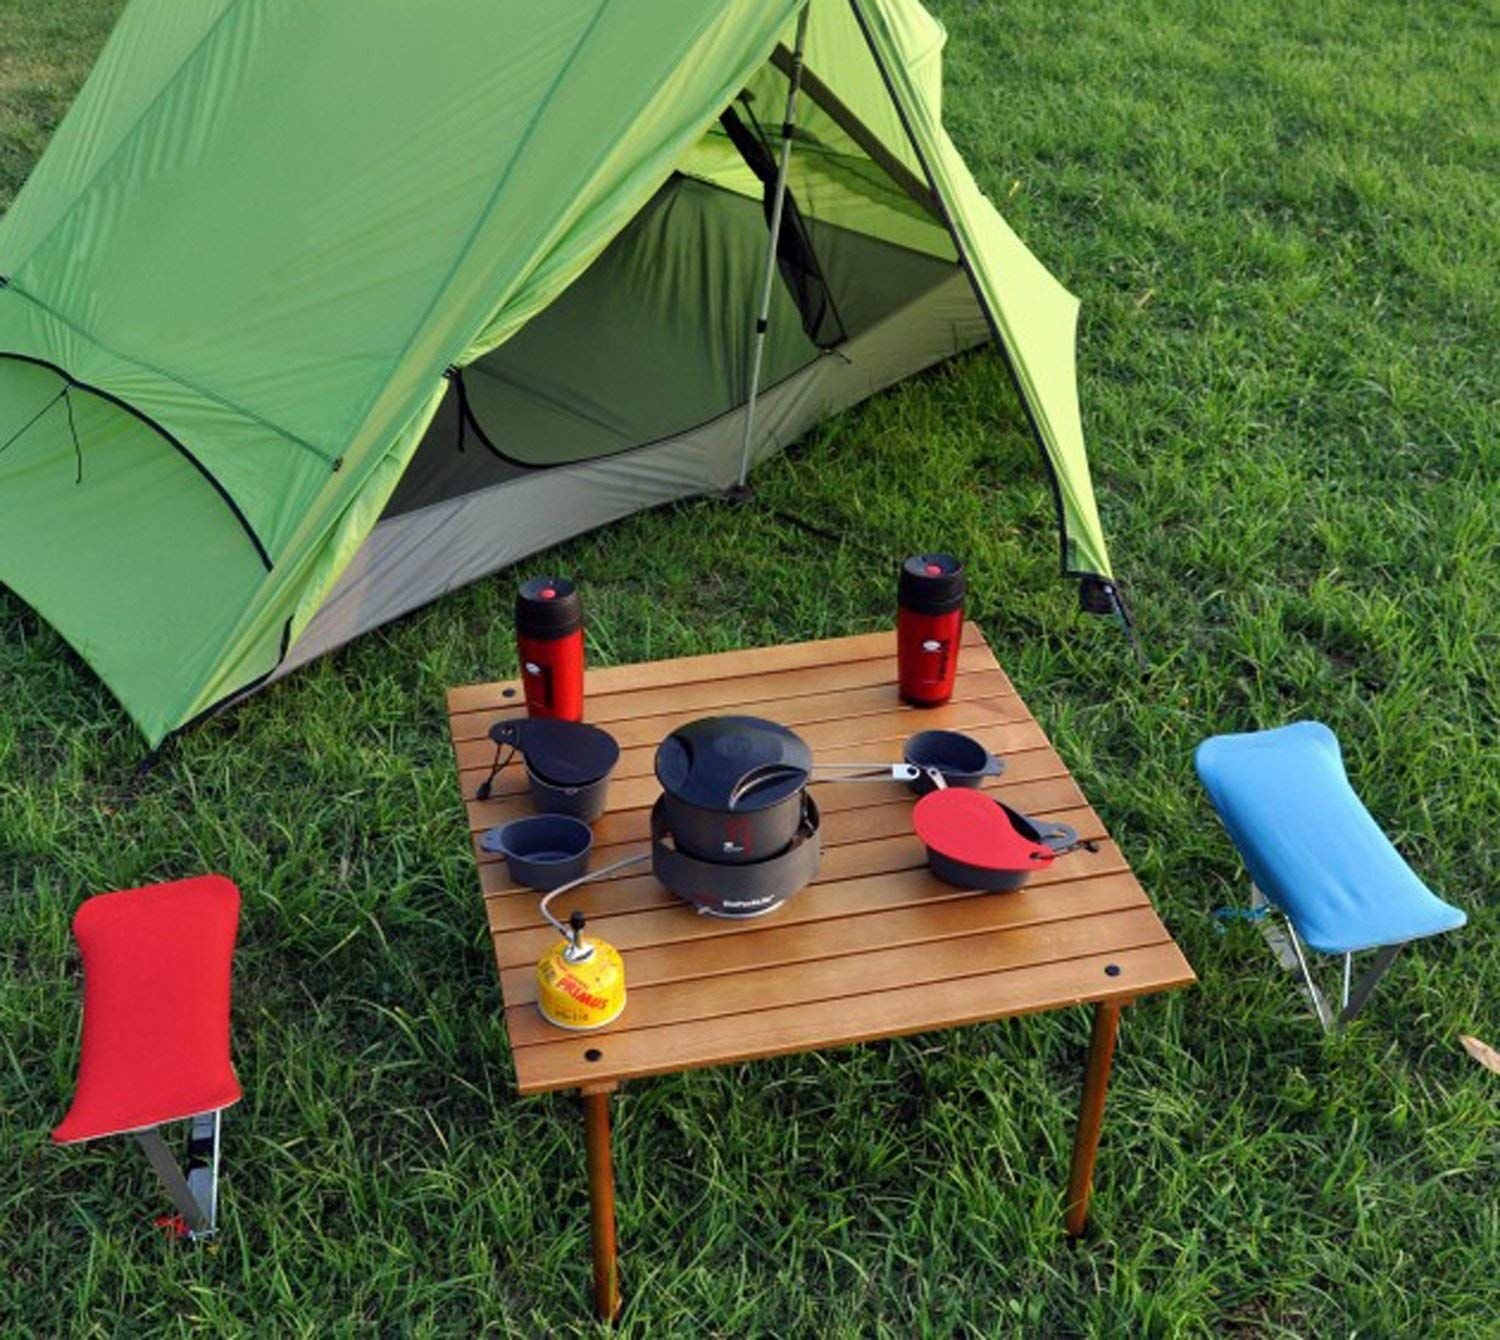 Camping with extend. Товары для кемпинга. Стол для кемпинга на природе. Палаточный столик. Стол для кемпинга складной.